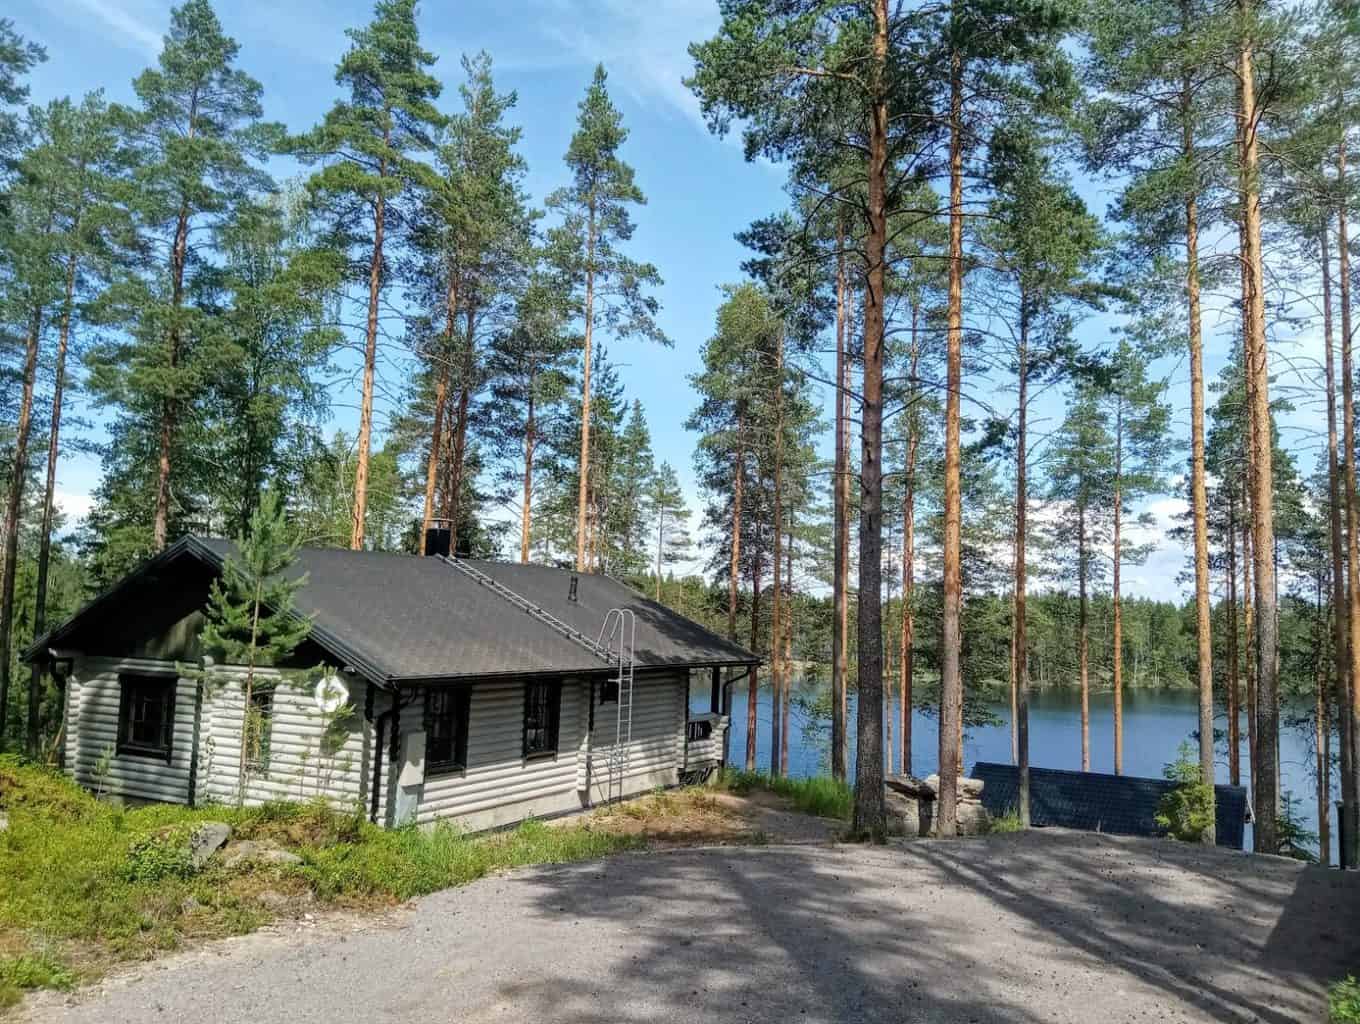 Villa Norppa cottage and Saimaa